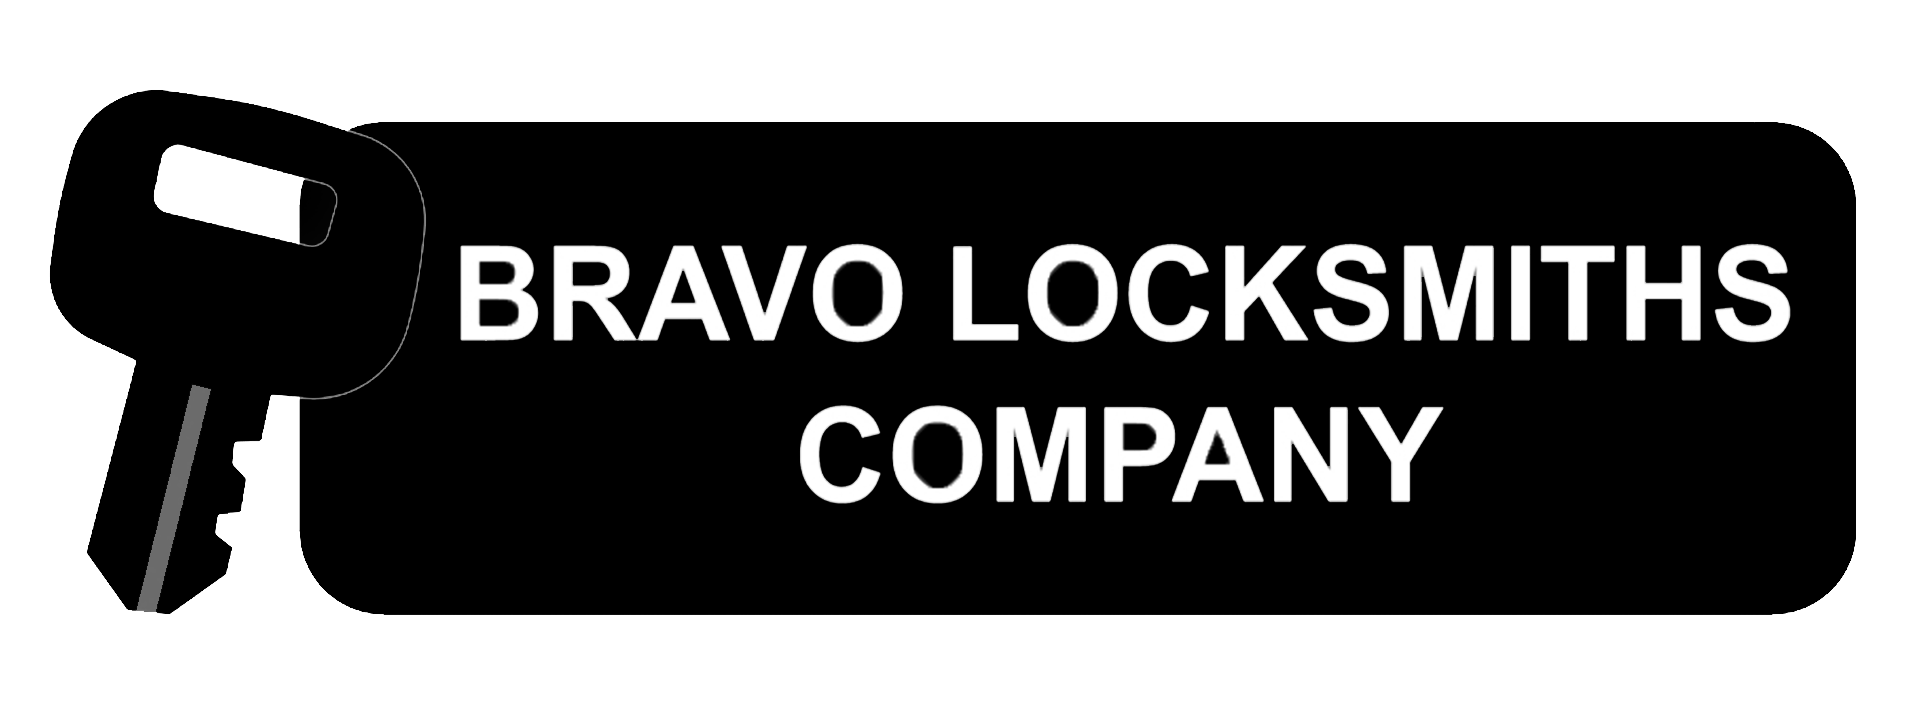 Bravo Locksmiths Company